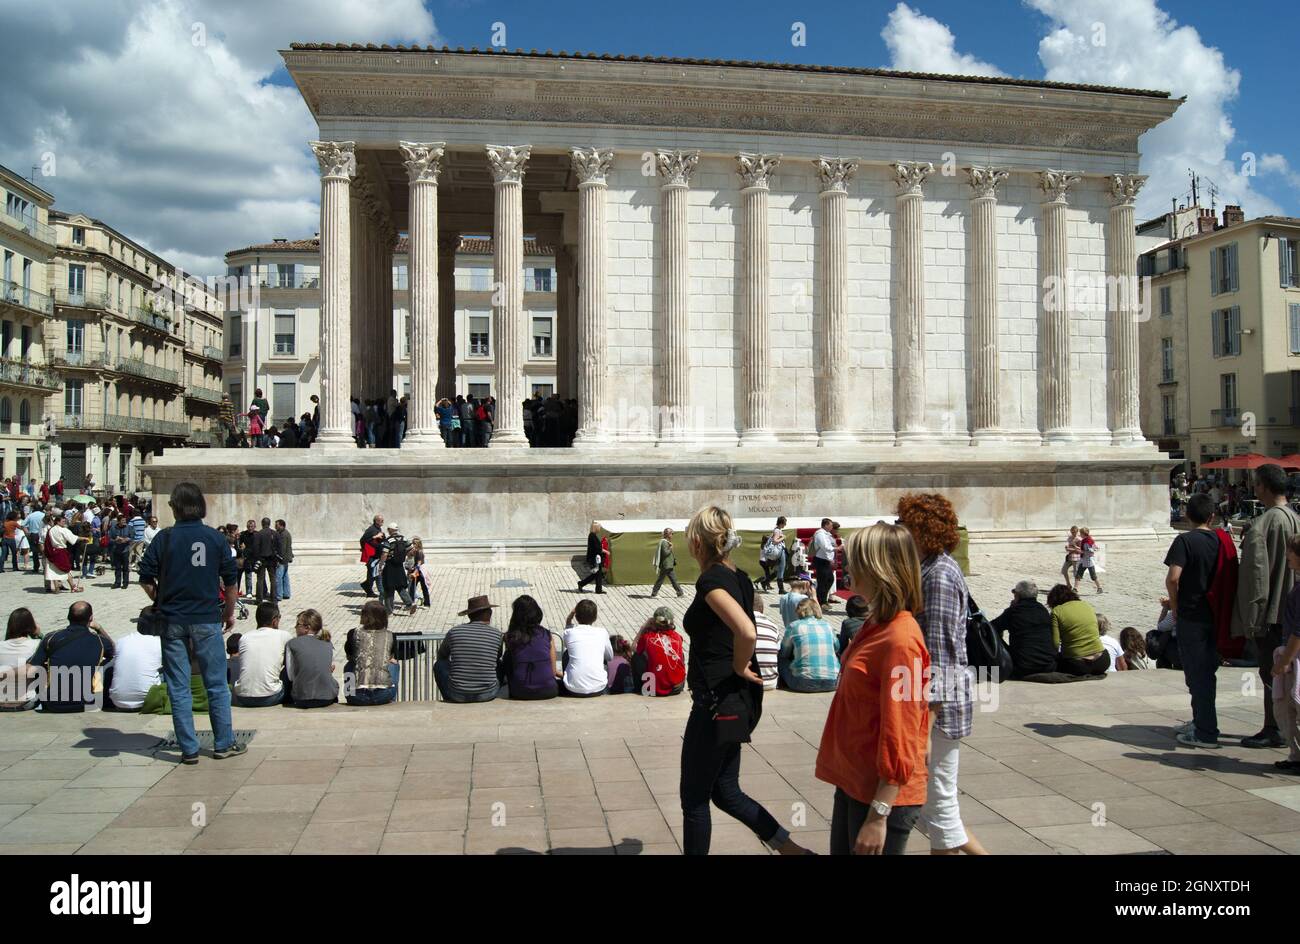 Nimes - Frankreich - April 24 2011 : Historischer römischer Tempel, das Maison Carree perfekt erhaltenes antikes Monument Sommertag mit Touristen, die das besuchen Stockfoto